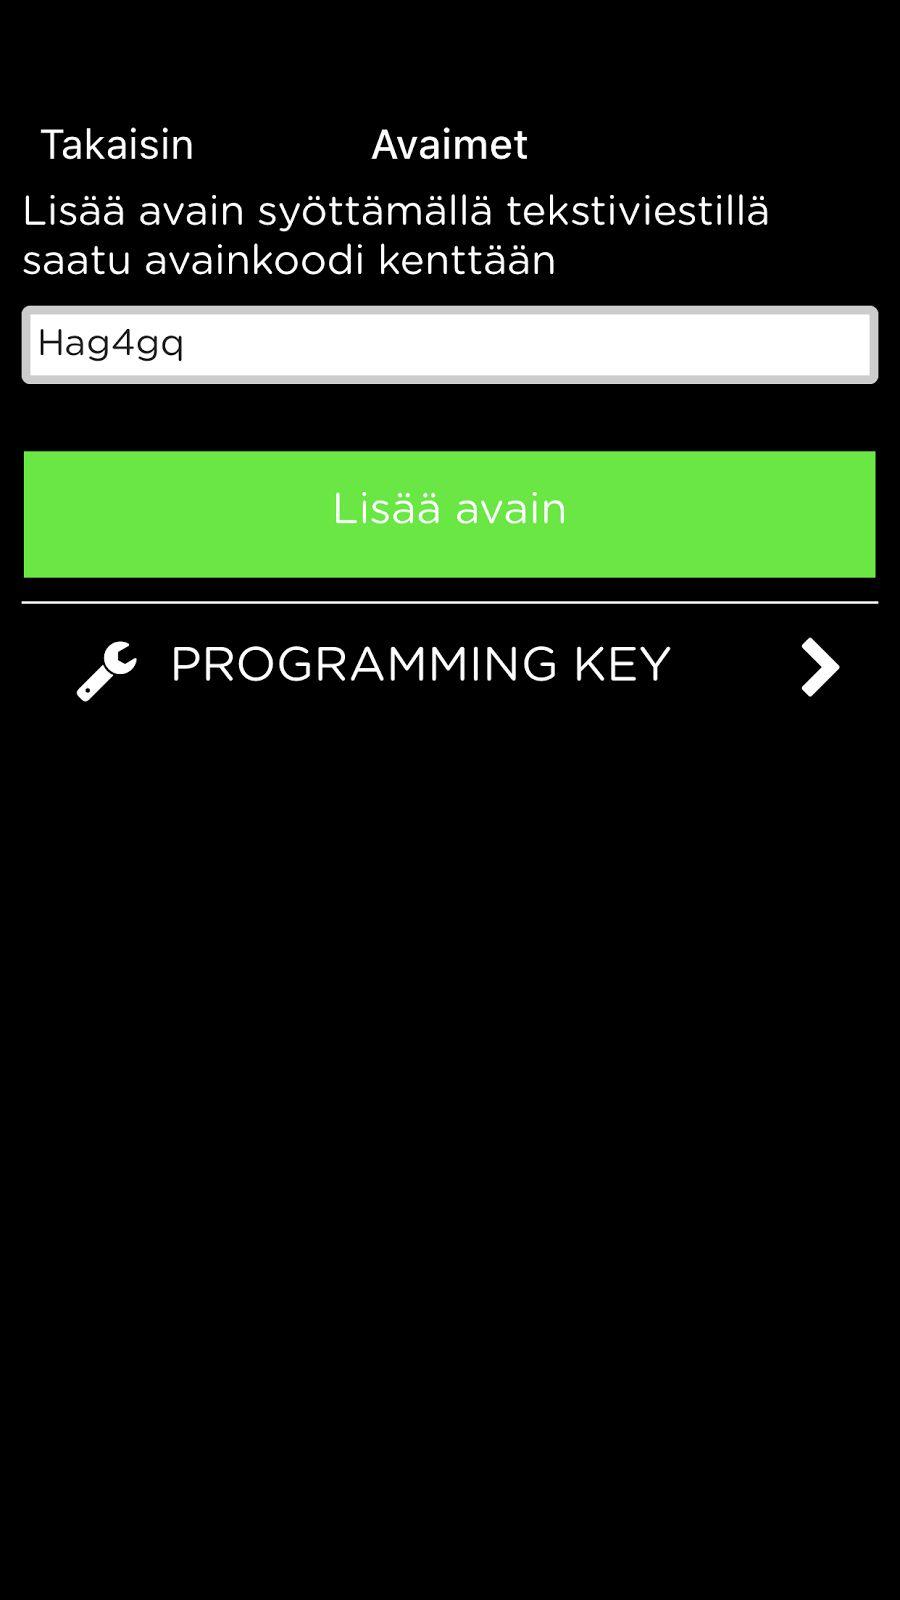 e-avain Programming key on annettu ja tässä esimerkissä annetaan e-avaimen koodia Avaimet on